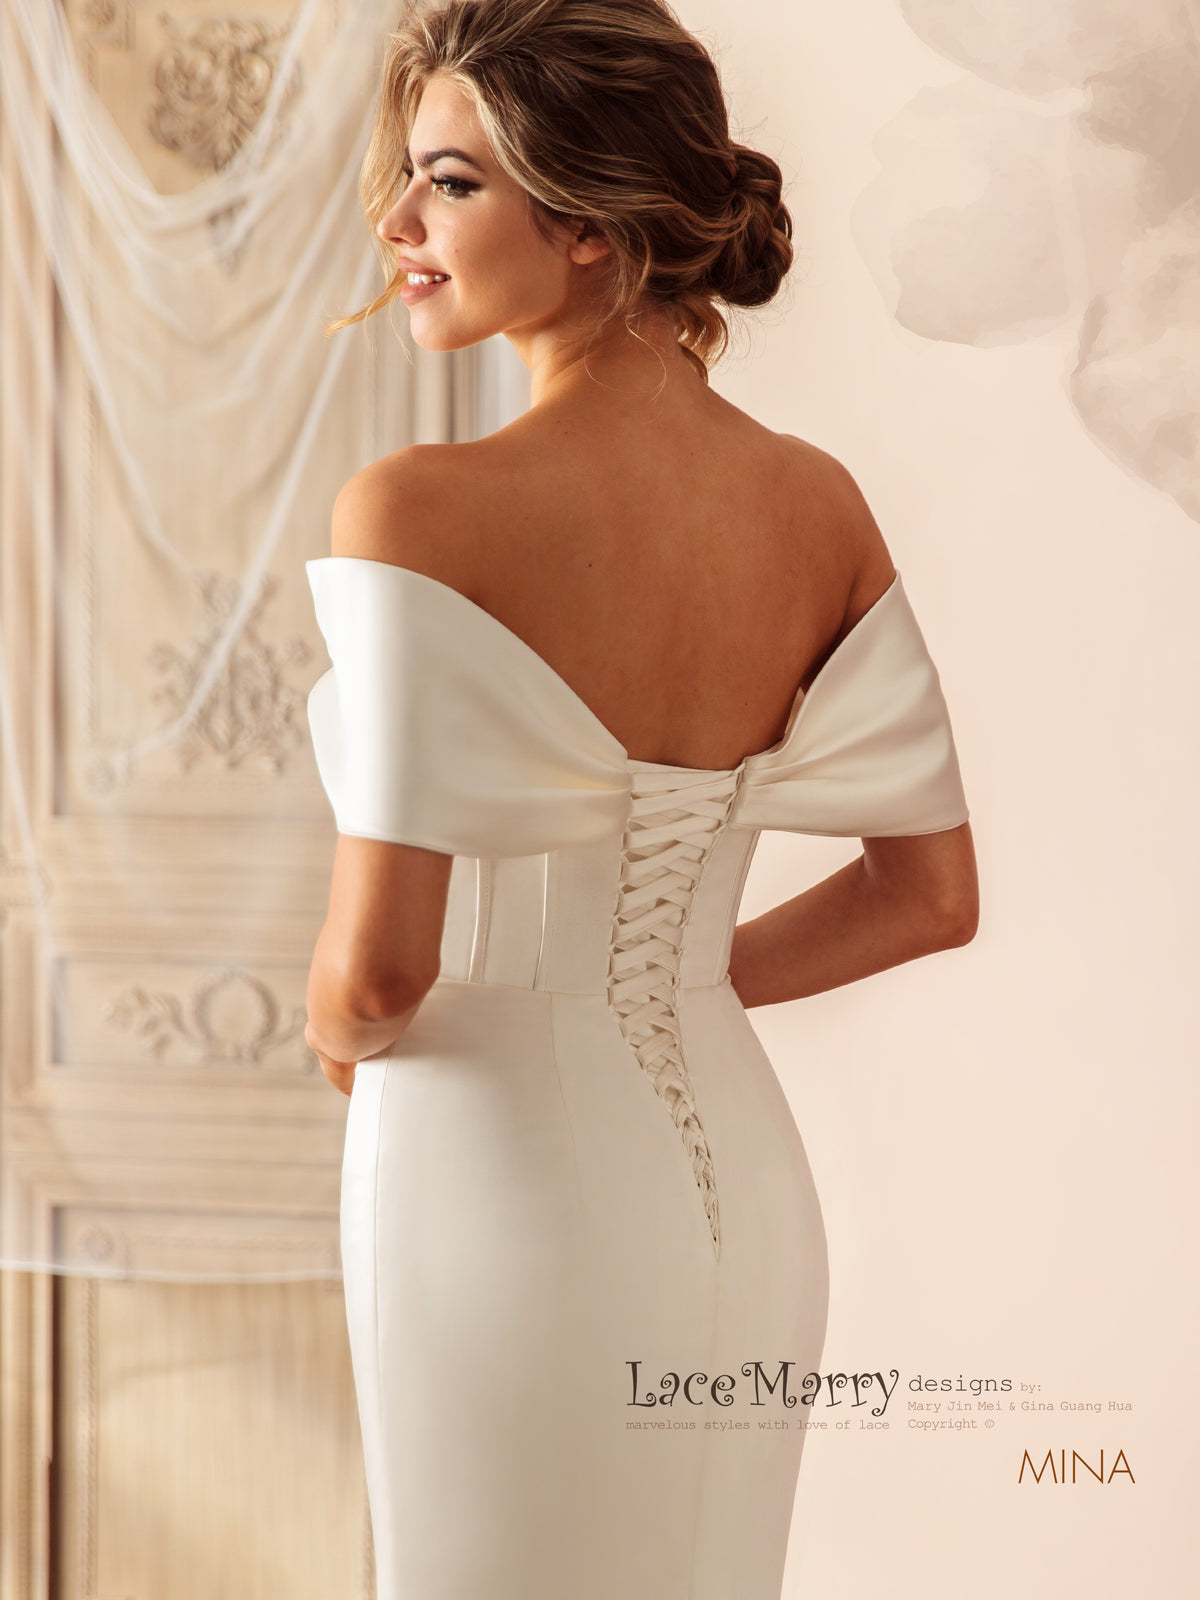 MINA / Off Shoulder Satin Wedding Dress